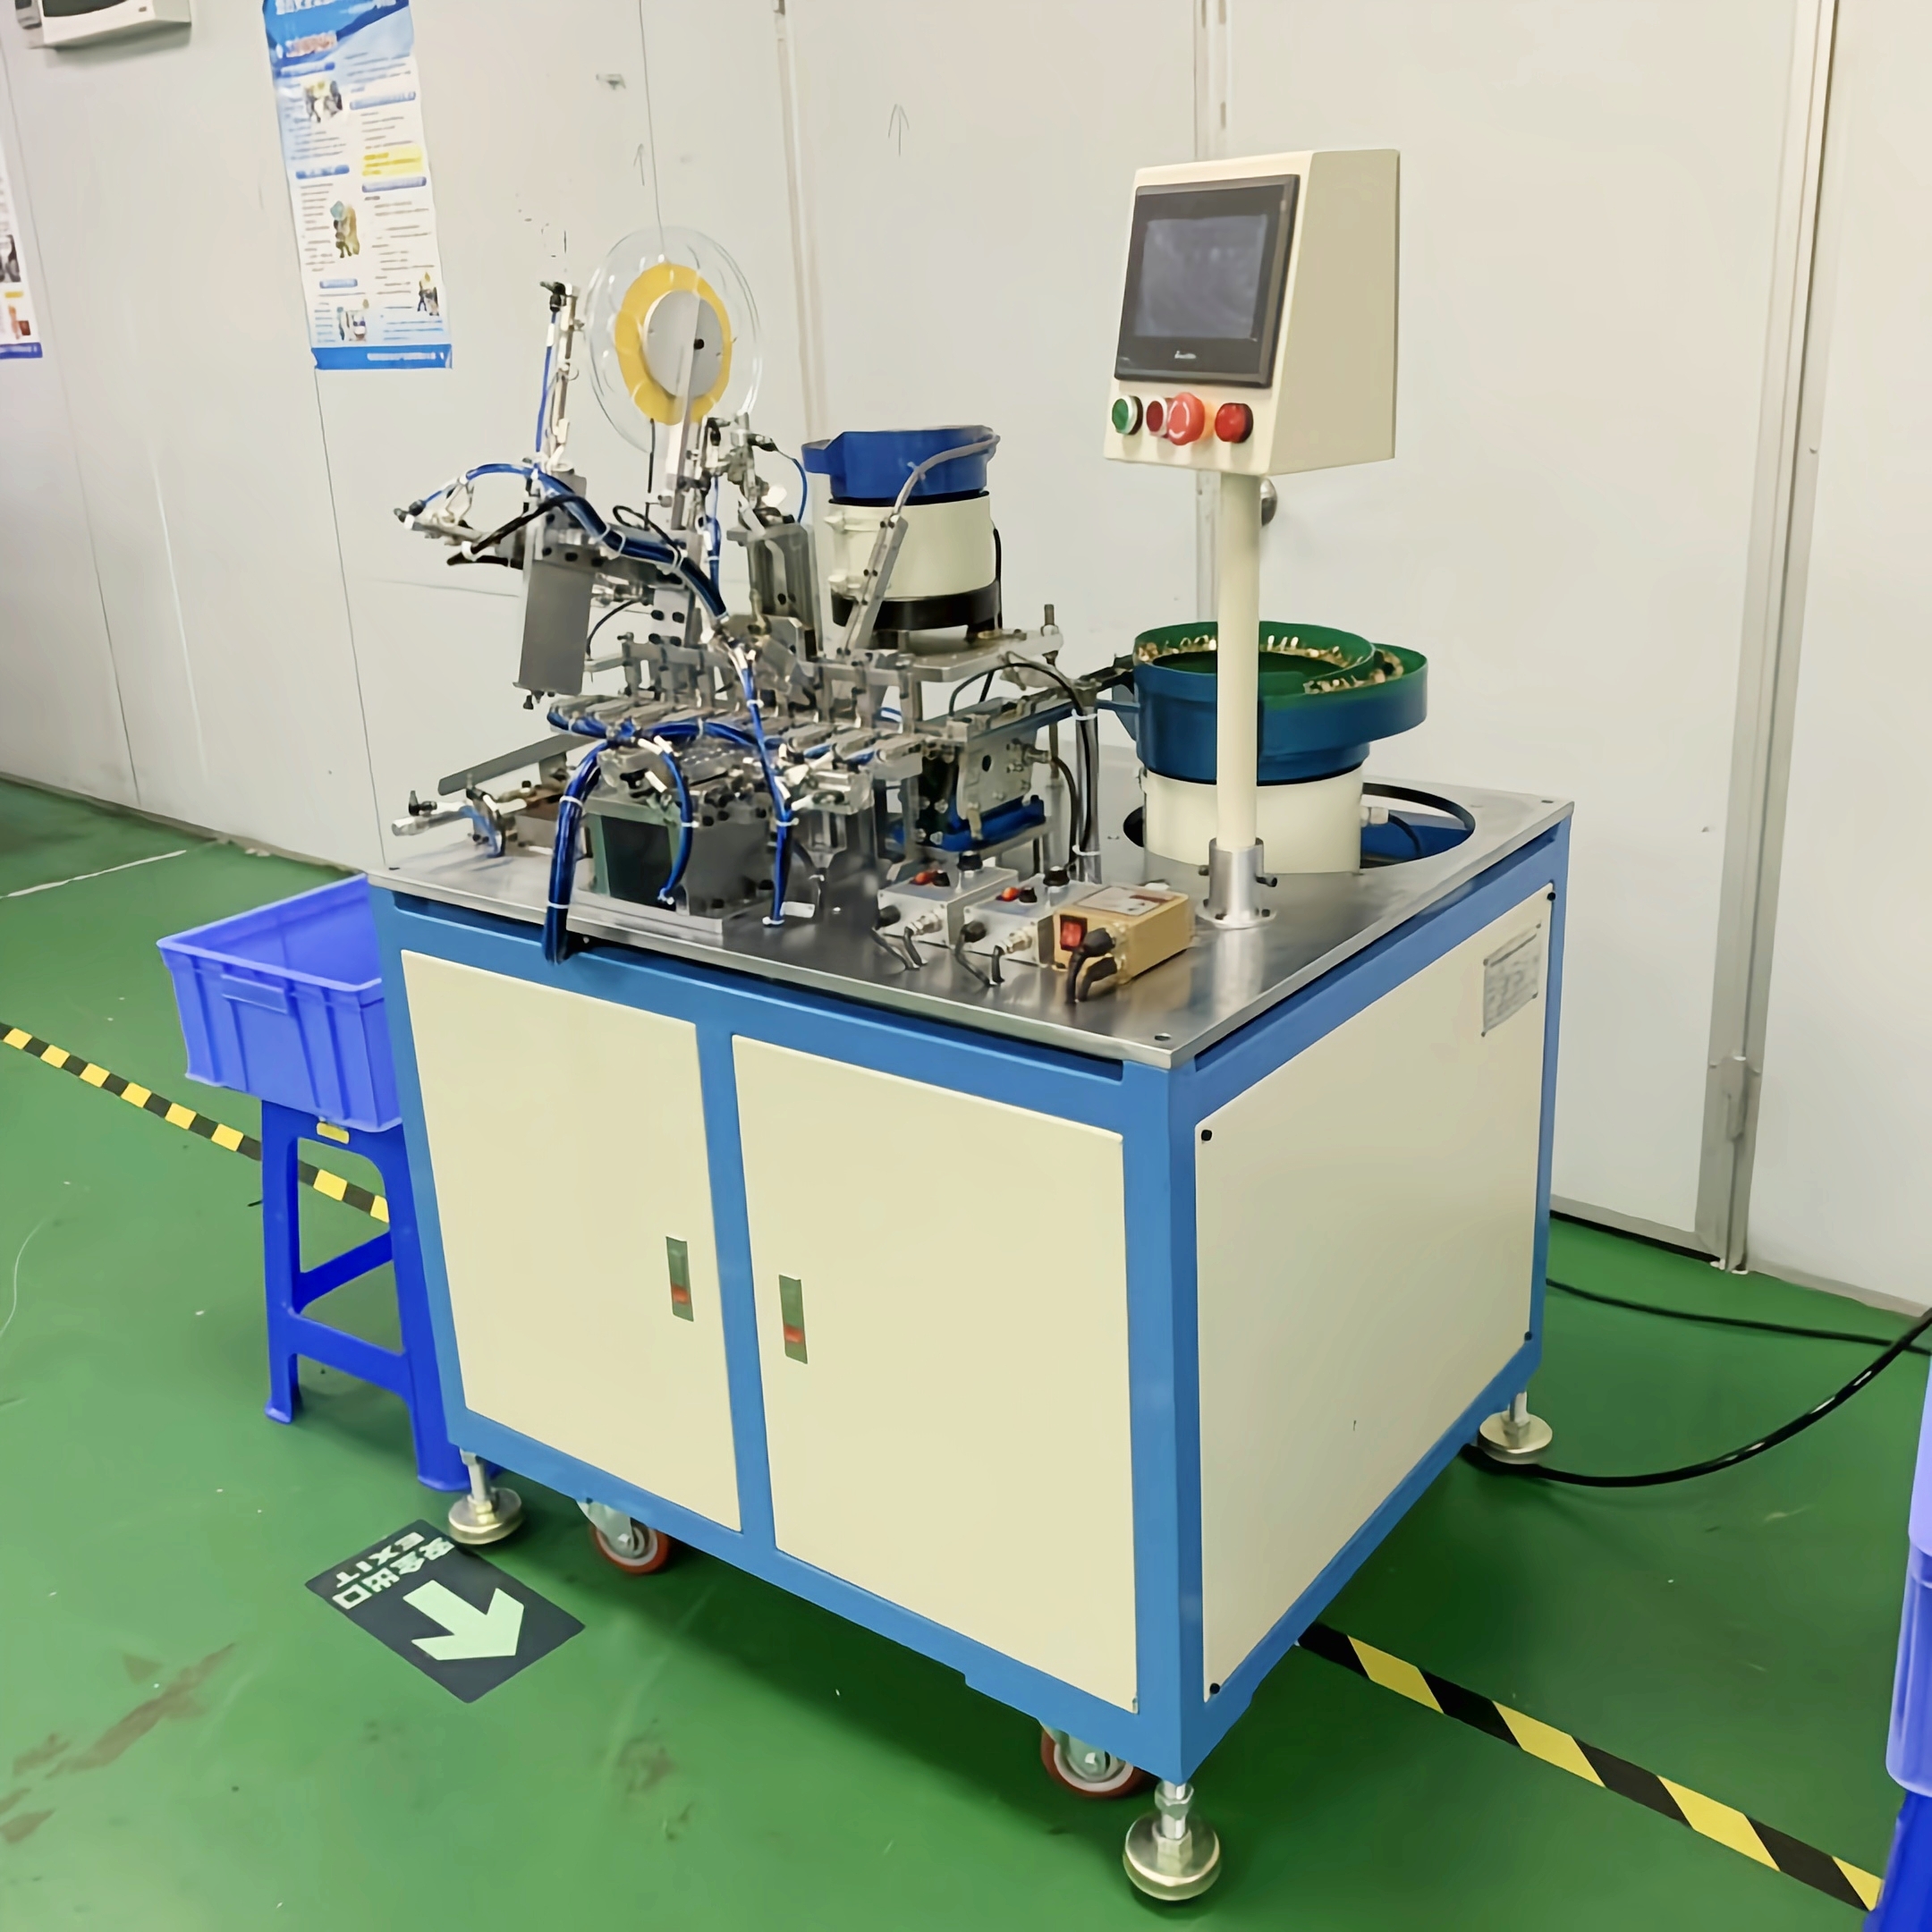 科羽鑫直销非标自动化微电机生产制造设备390碳精阻尼条配一体机